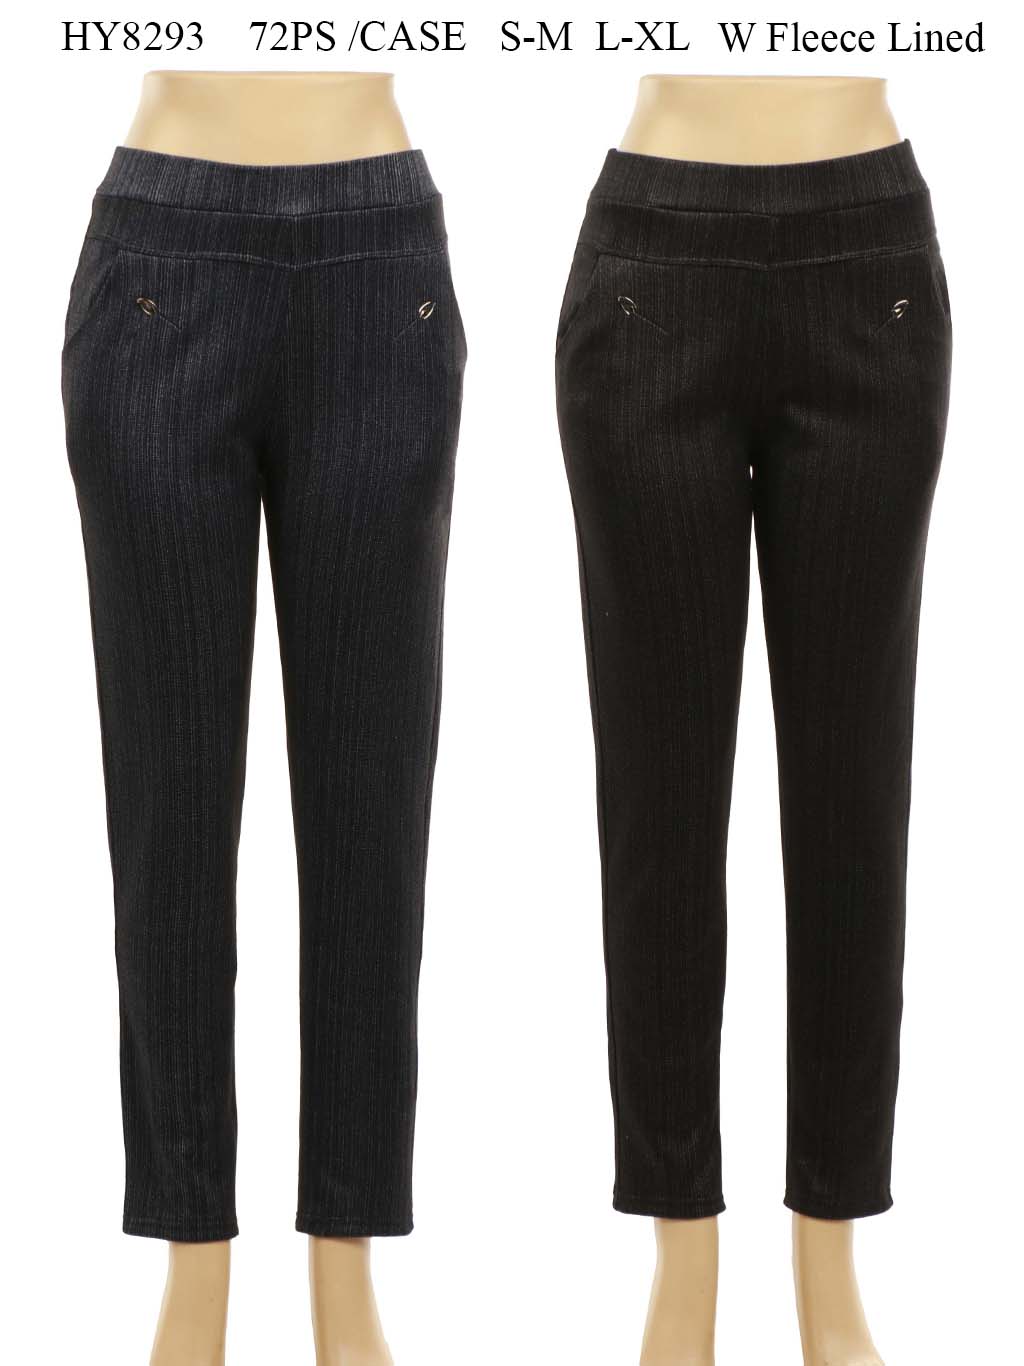 Women's Fleece Lined Pants Mix Color One Dozen Wholesale Size: S-M, L-XL -  Nali Collection, Inc.